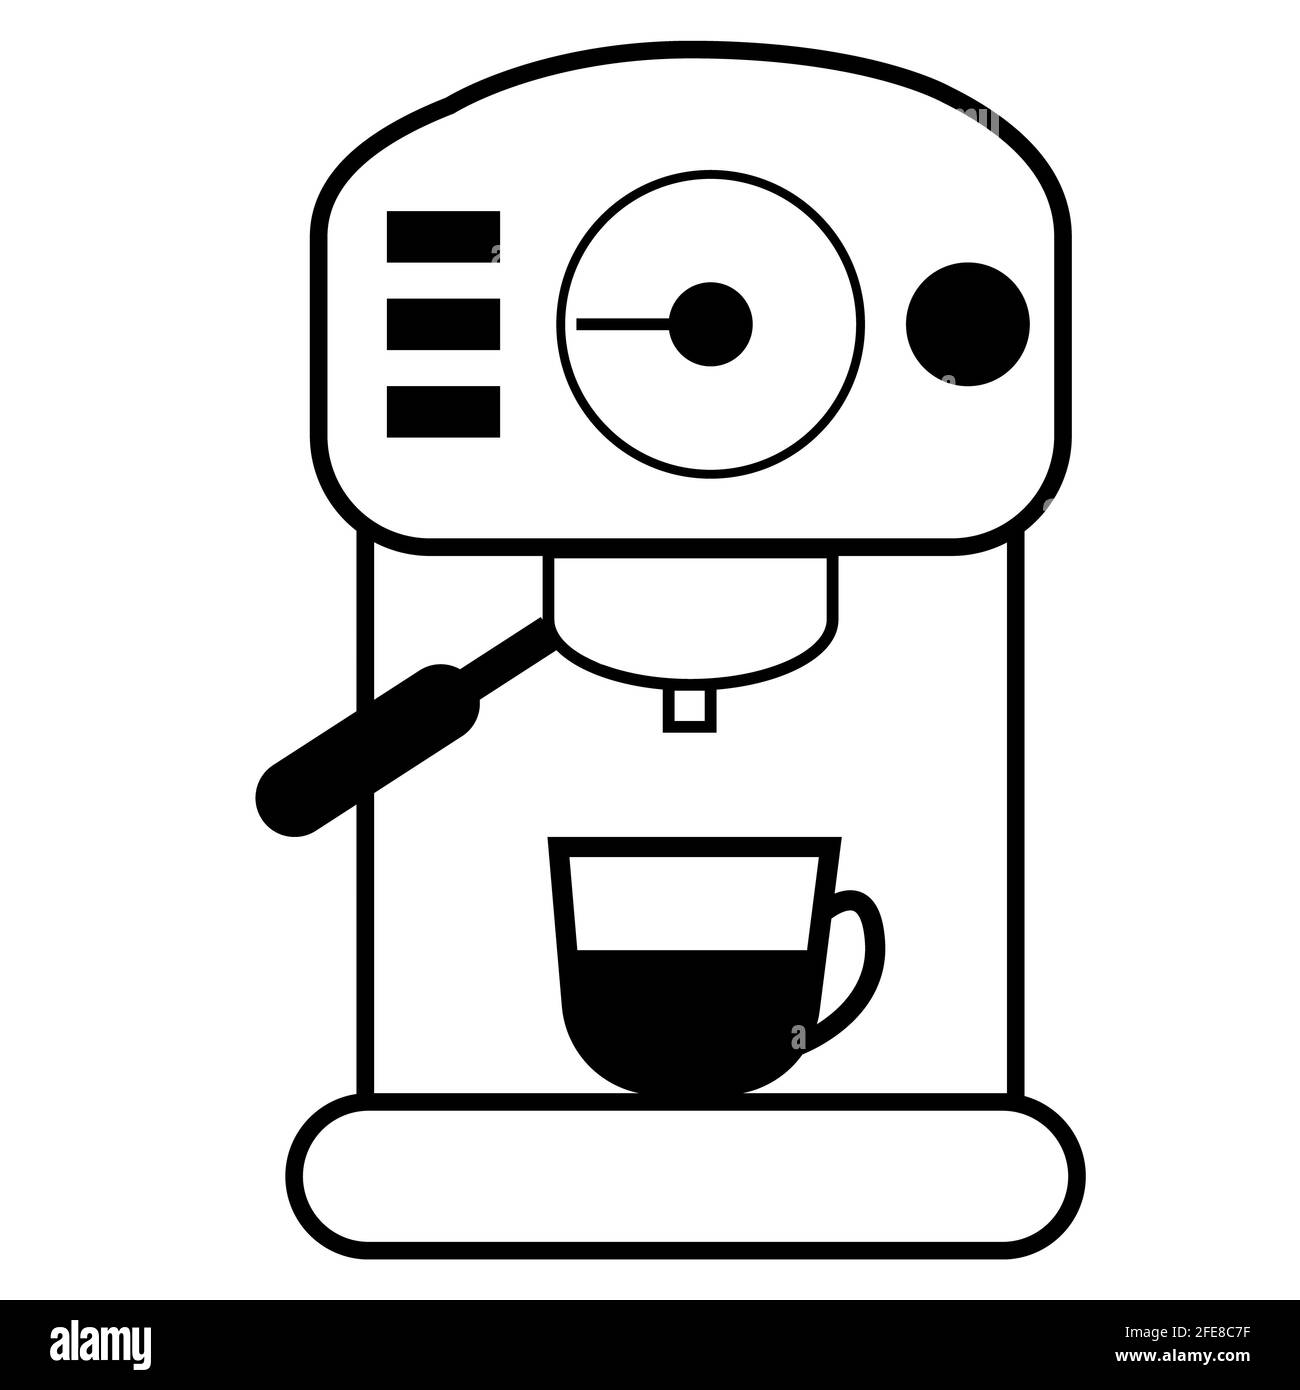 coffee machine icon on white background. bar espresso coffee machine. coffee machine sign. flat style. Stock Photo